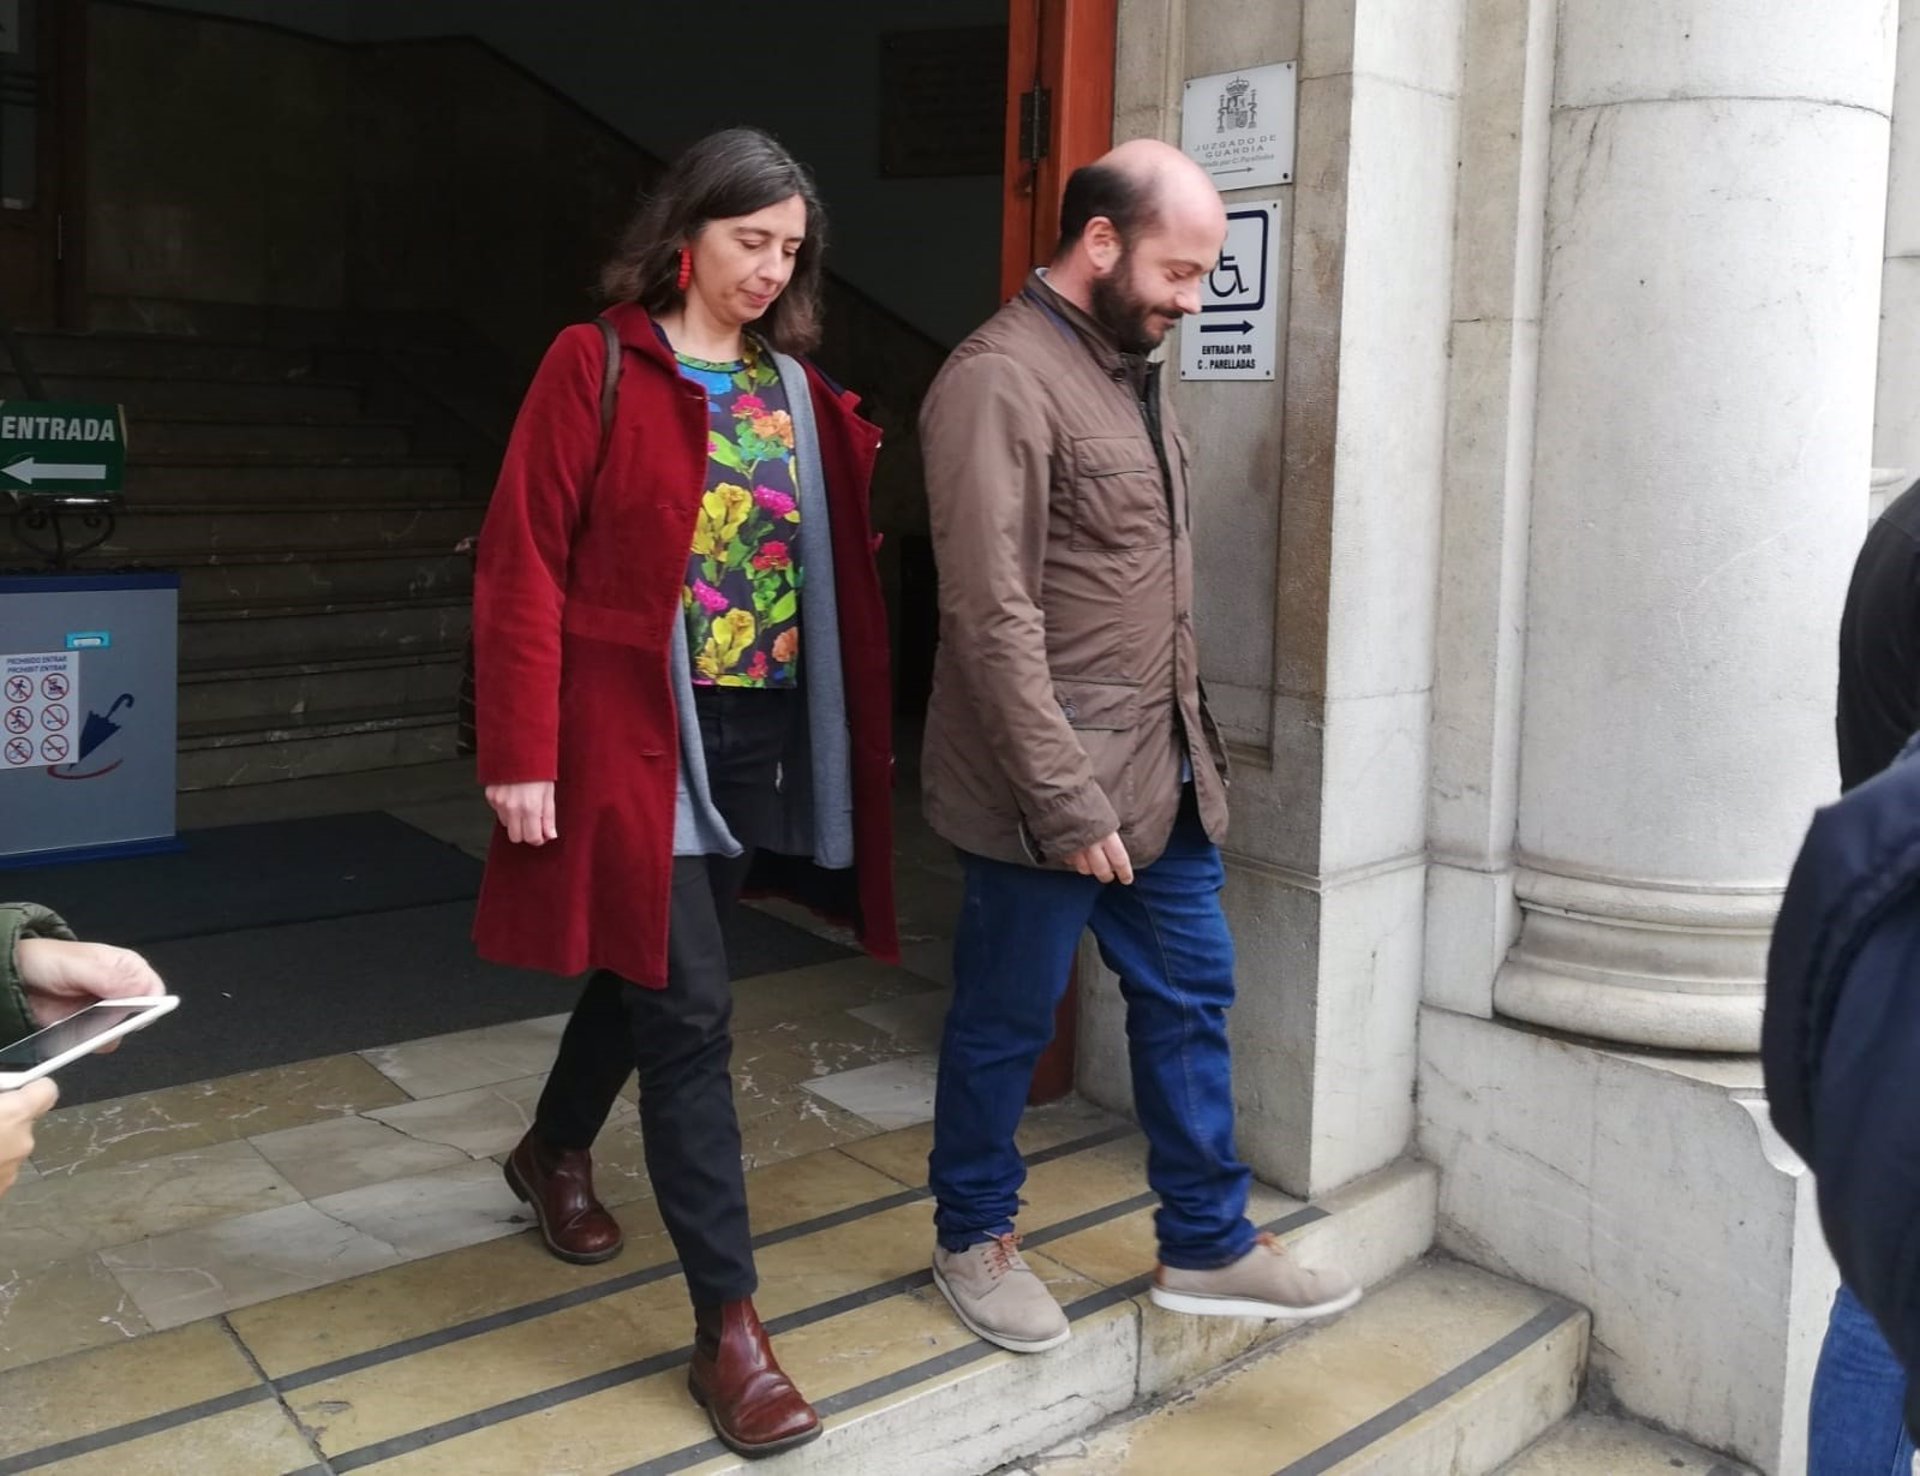 La expresidenta de Emaya, Neus Truyol, saliendo del juzgado tras declarar por la investigación sobre los vertidos de aguas fecales a la Bahía de Palma, a 14 de febrero de 2020.